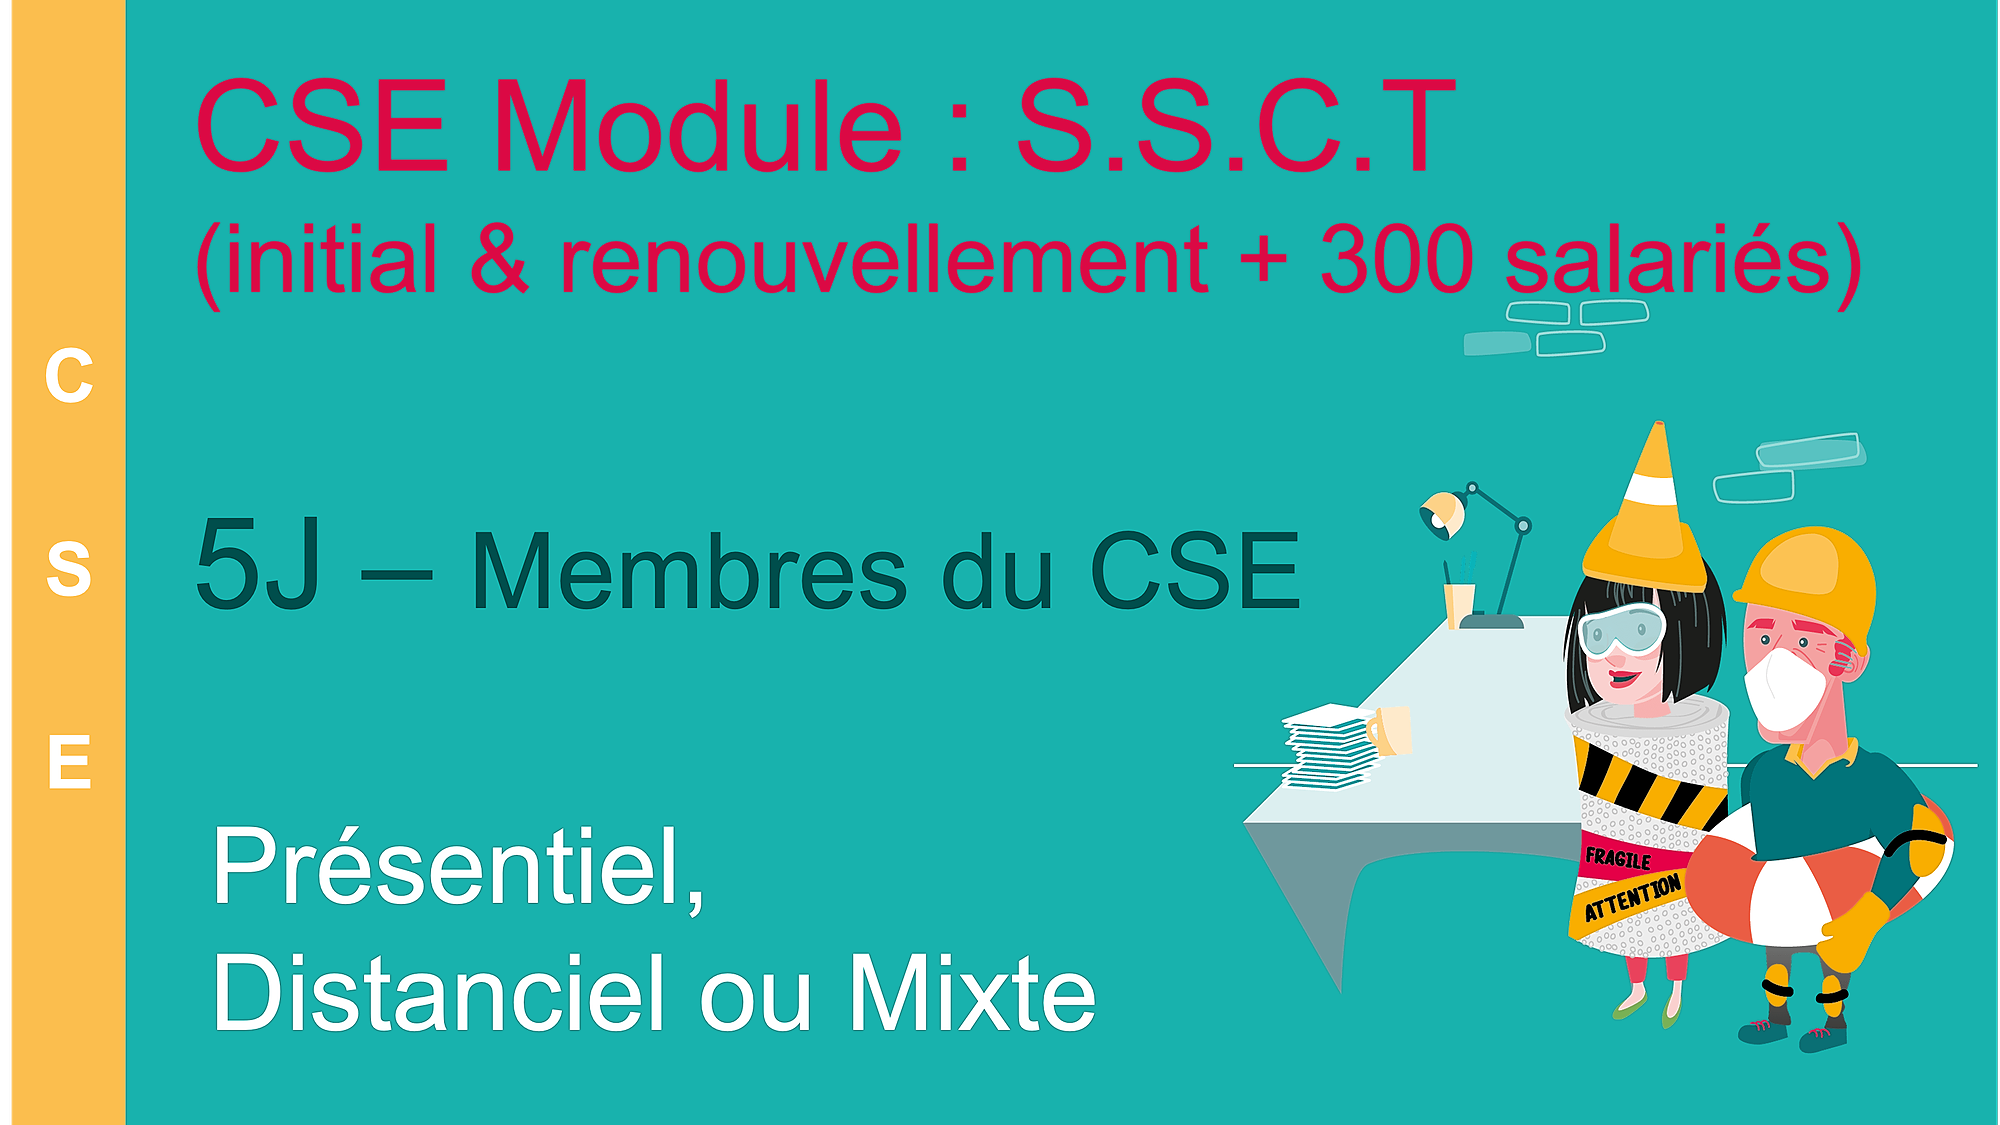 Représentation de la formation : Membre du CSE - Module SSCT - 5 jours - (CSE-SSCT-5J)